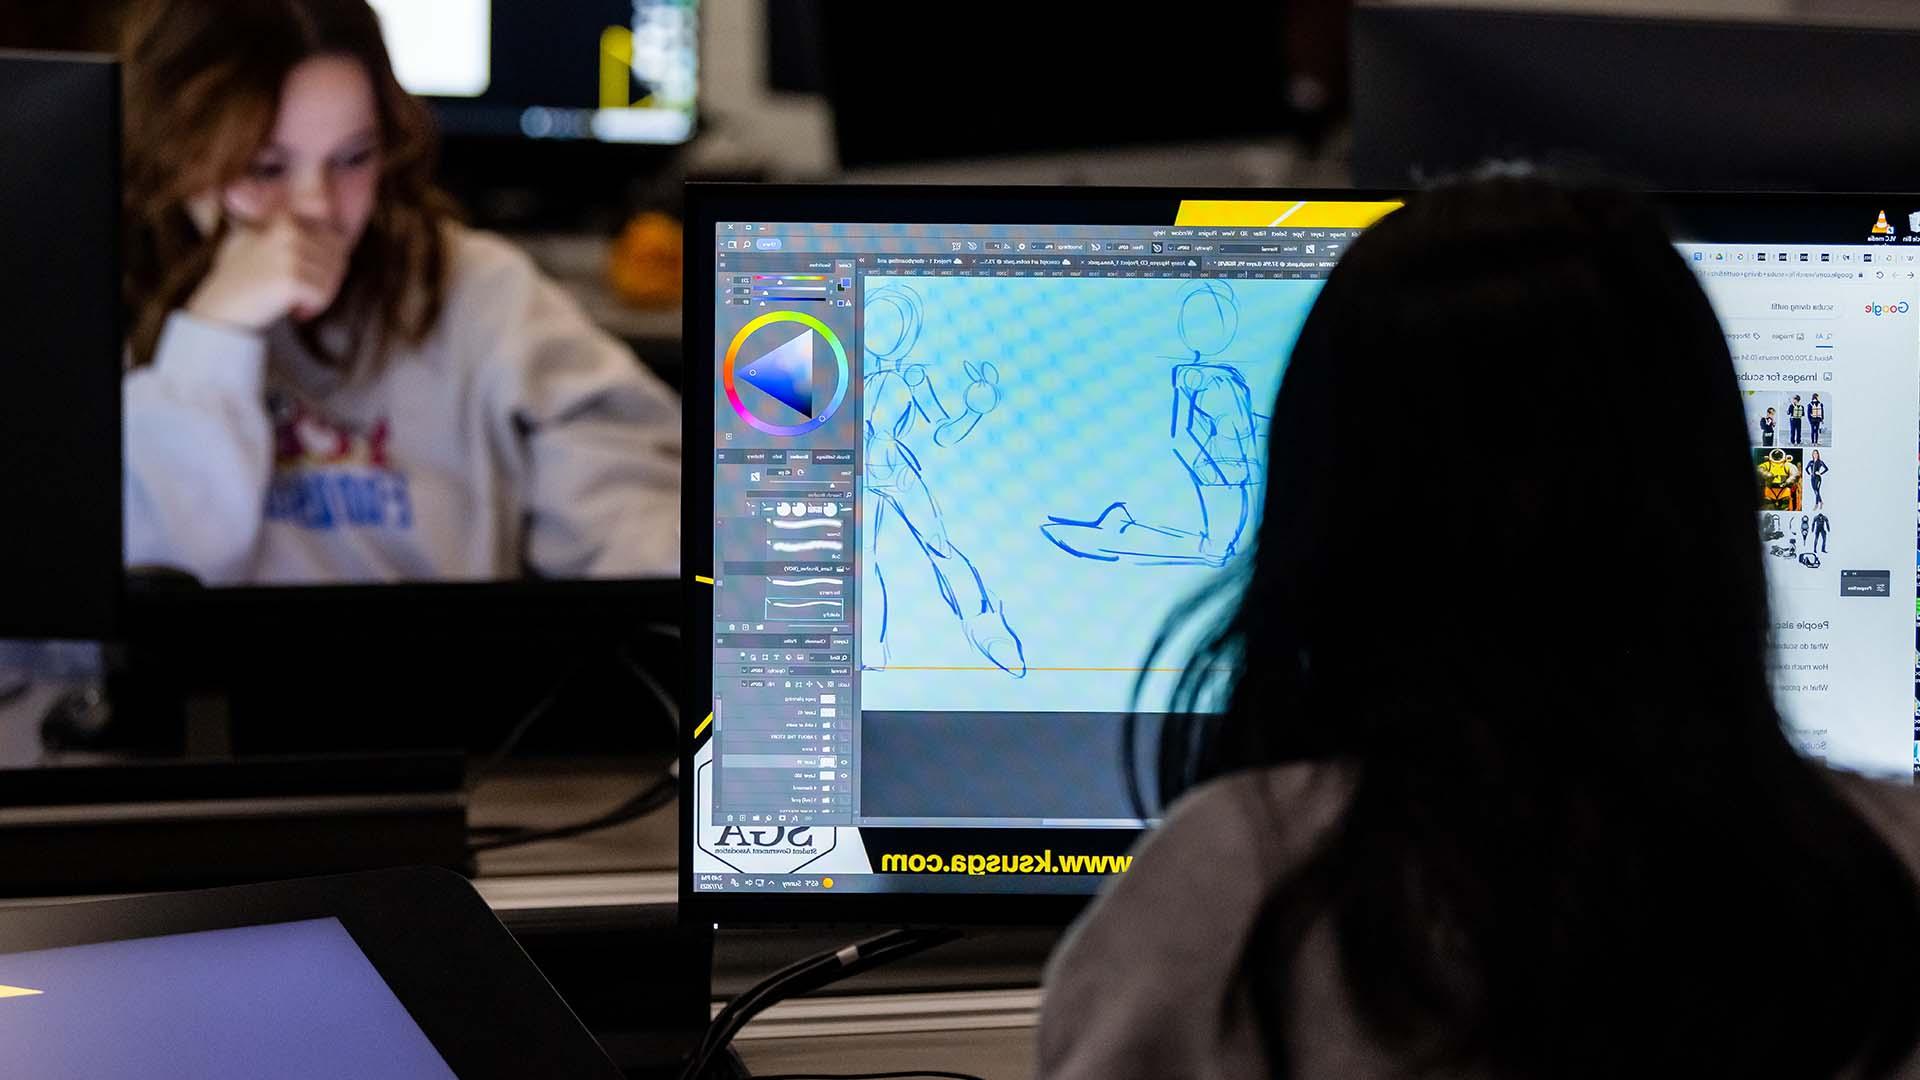  /在计算机实验室从事角色设计的动画专业学生. 